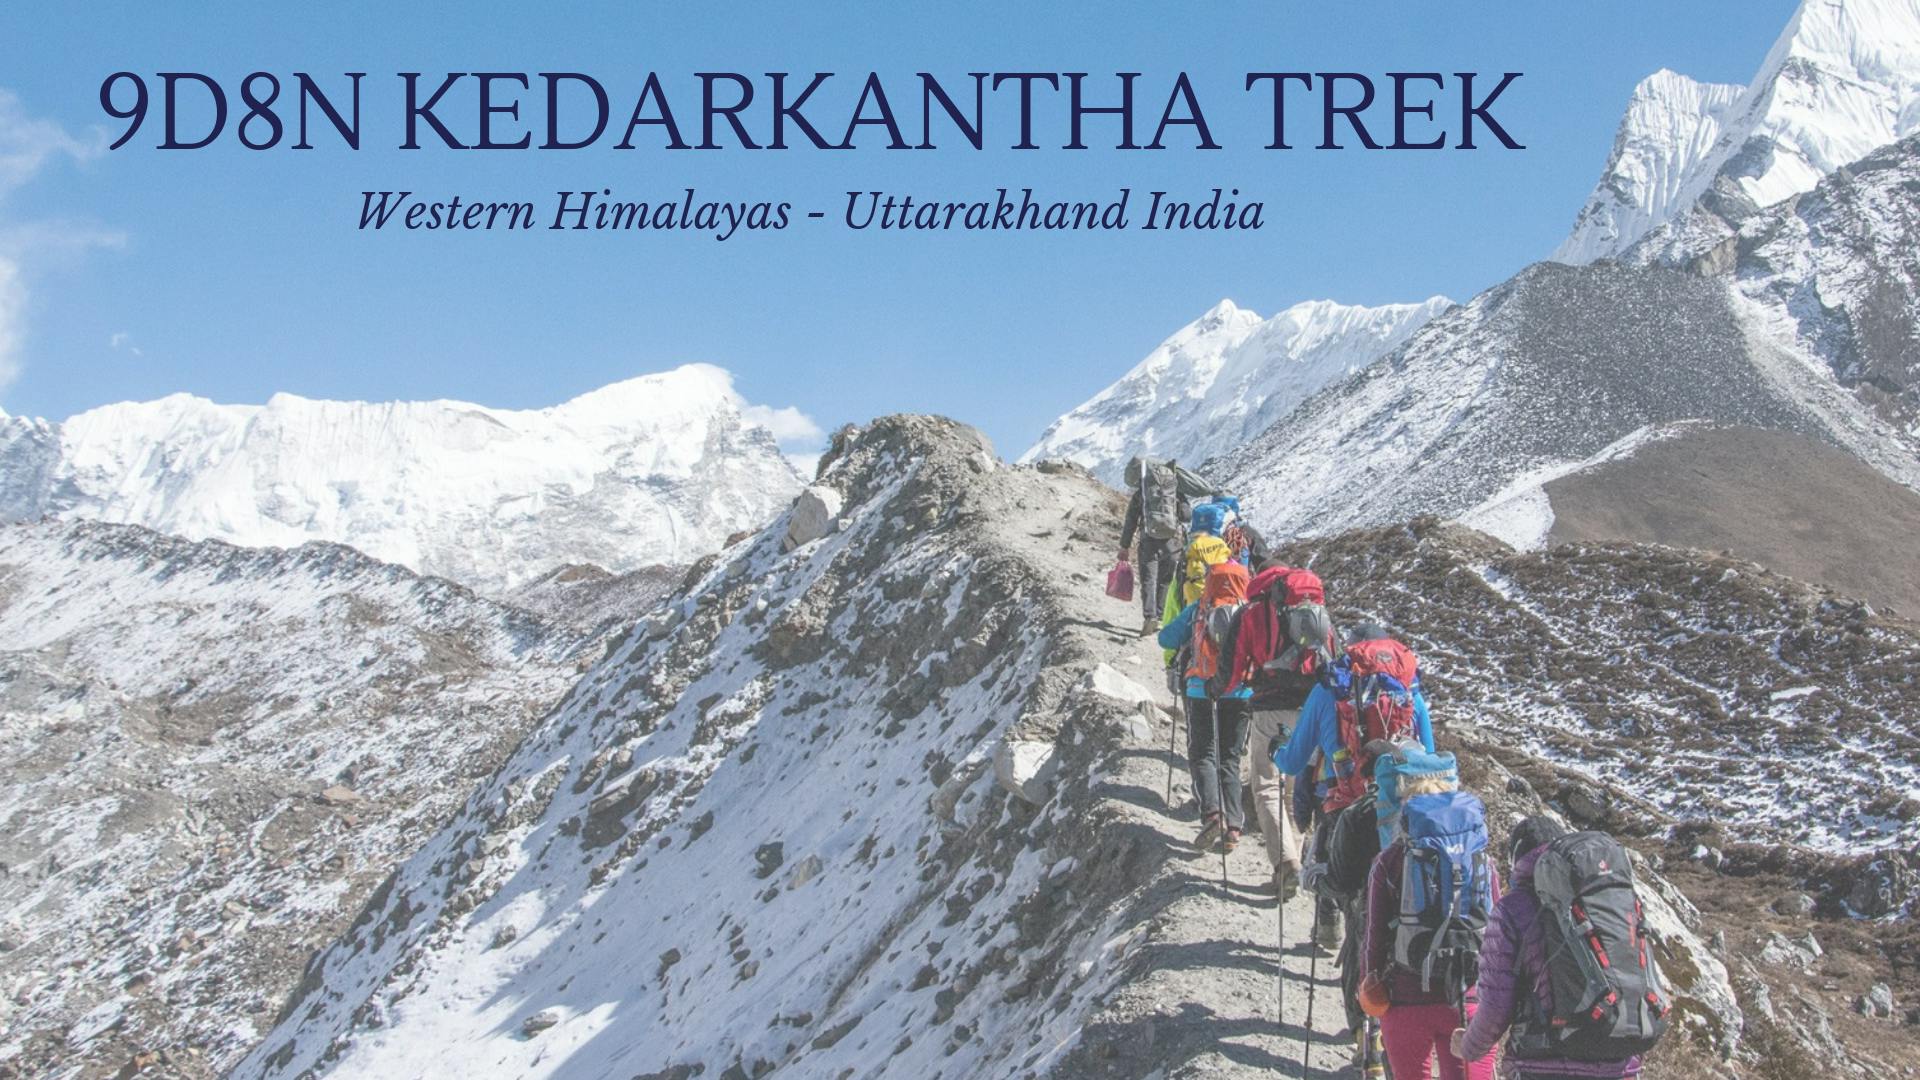 9D8N Western Himalayas Trek Retreat